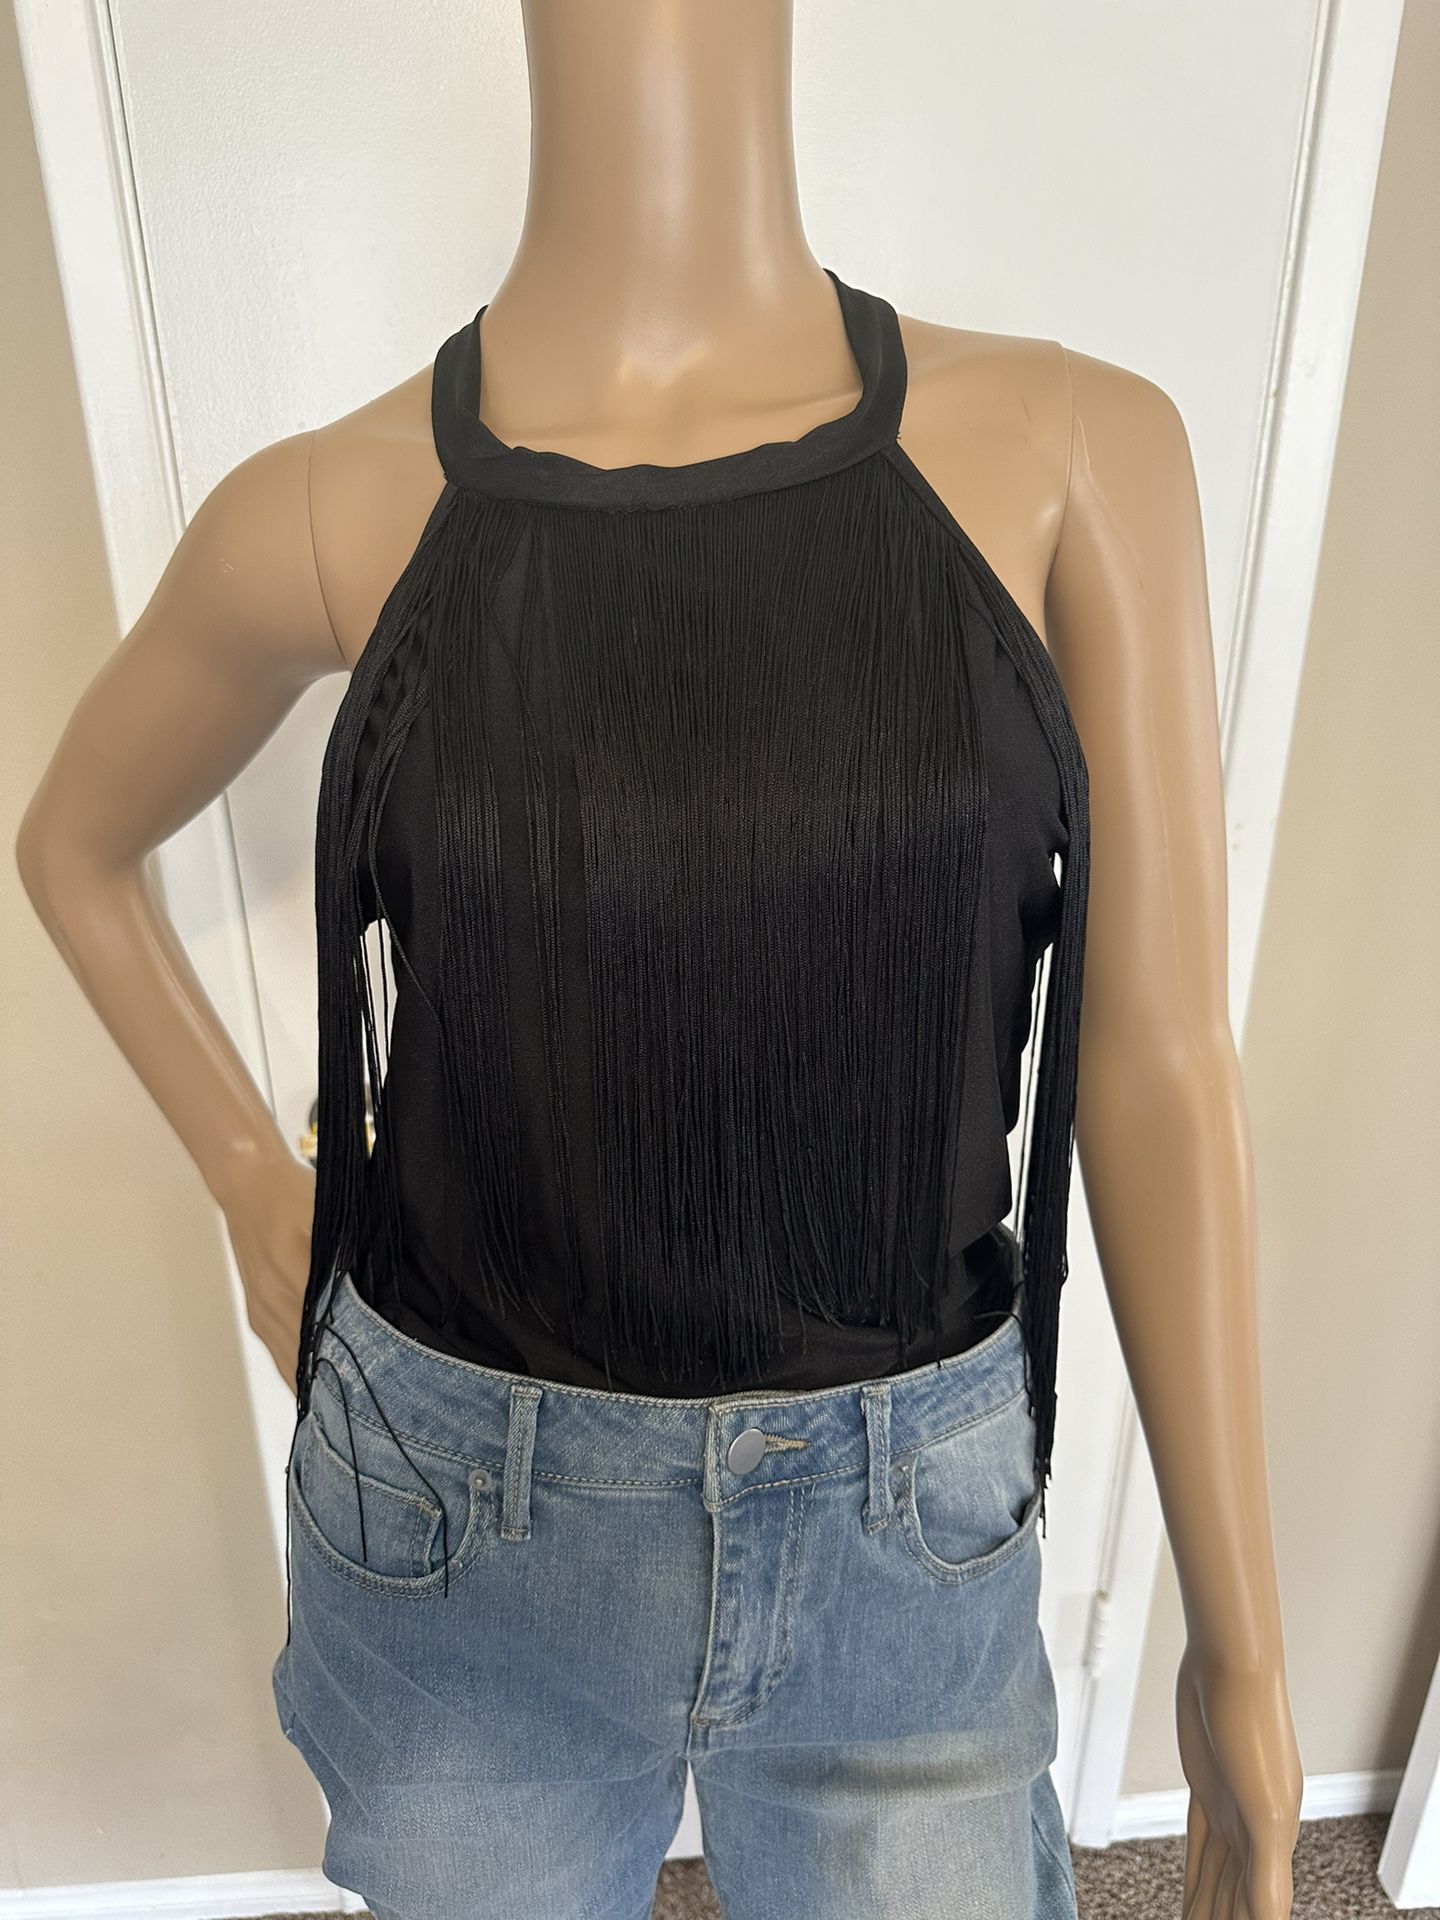 Women’s Black Fringe Bodysuit Size Large 